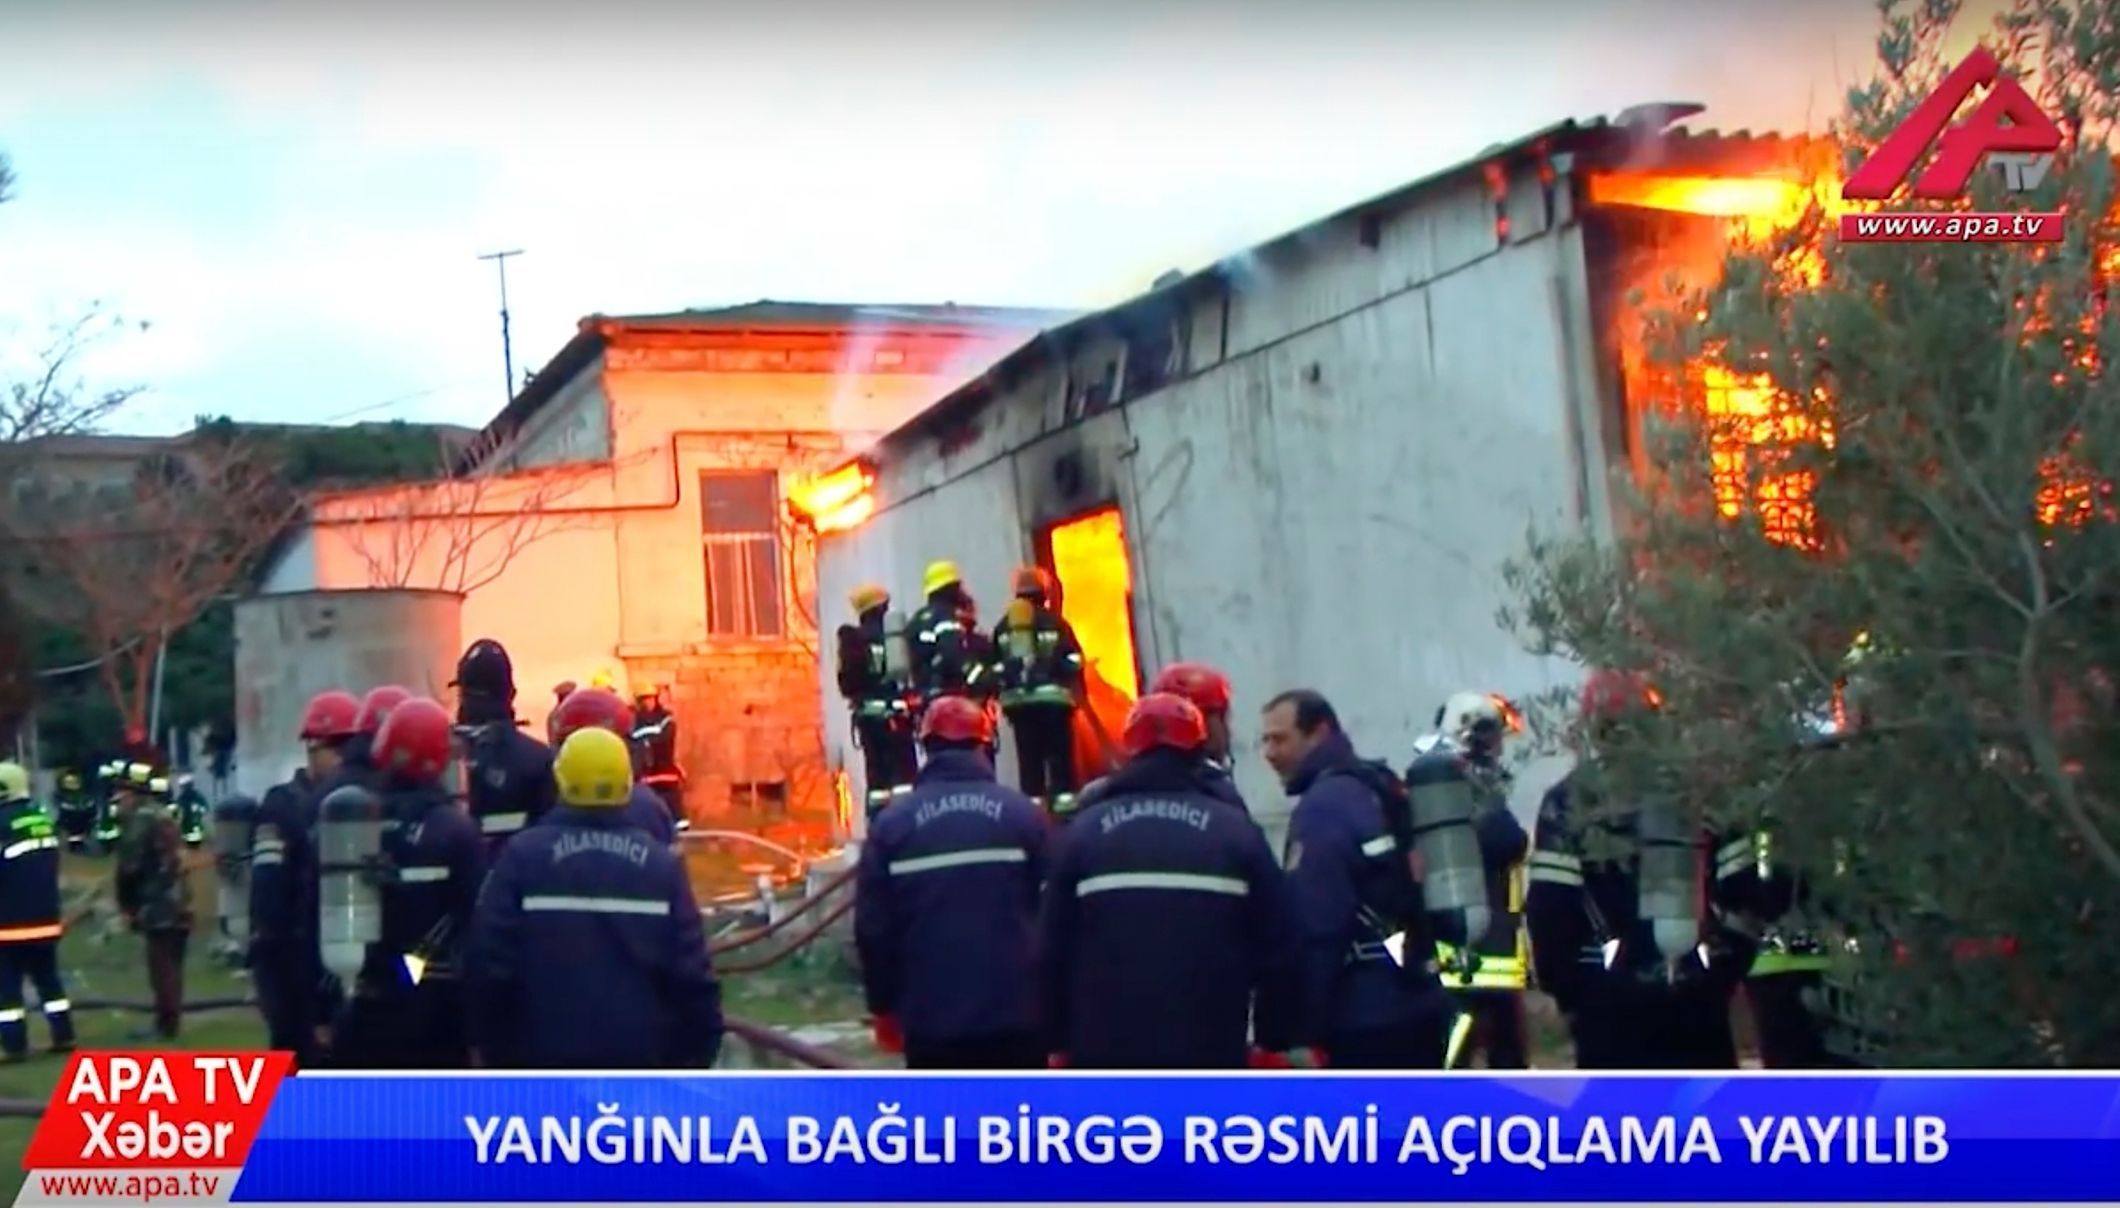 Snímek z ázerbájdžánské televize z požáru rehabilitačního střediska pro drogově závislé v Baku.